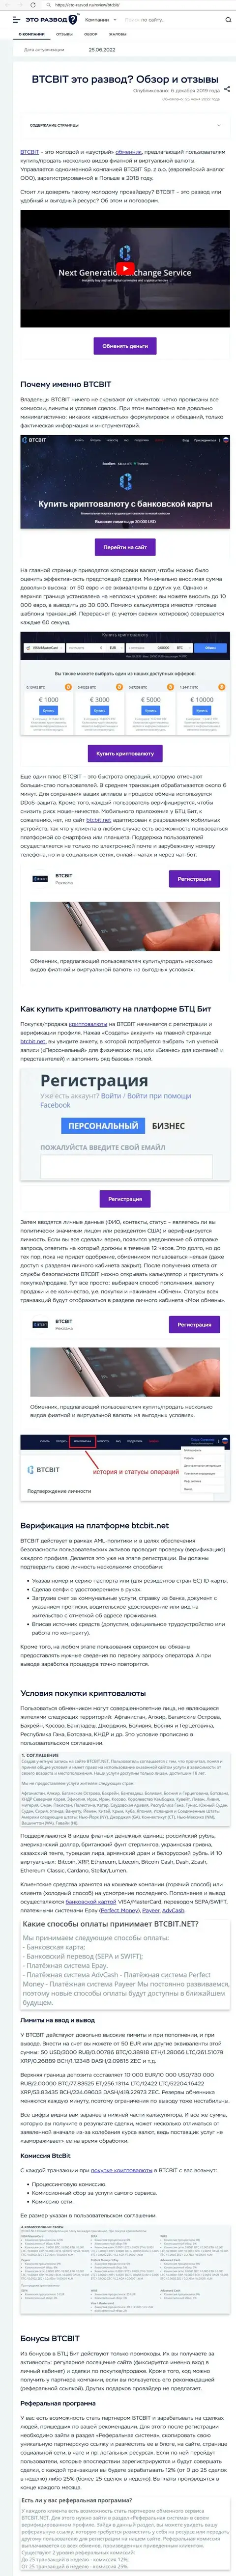 Обзор деятельности и условия для предоставления услуг онлайн обменки БТК Бит в обзоре на сайте Eto Razvod Ru